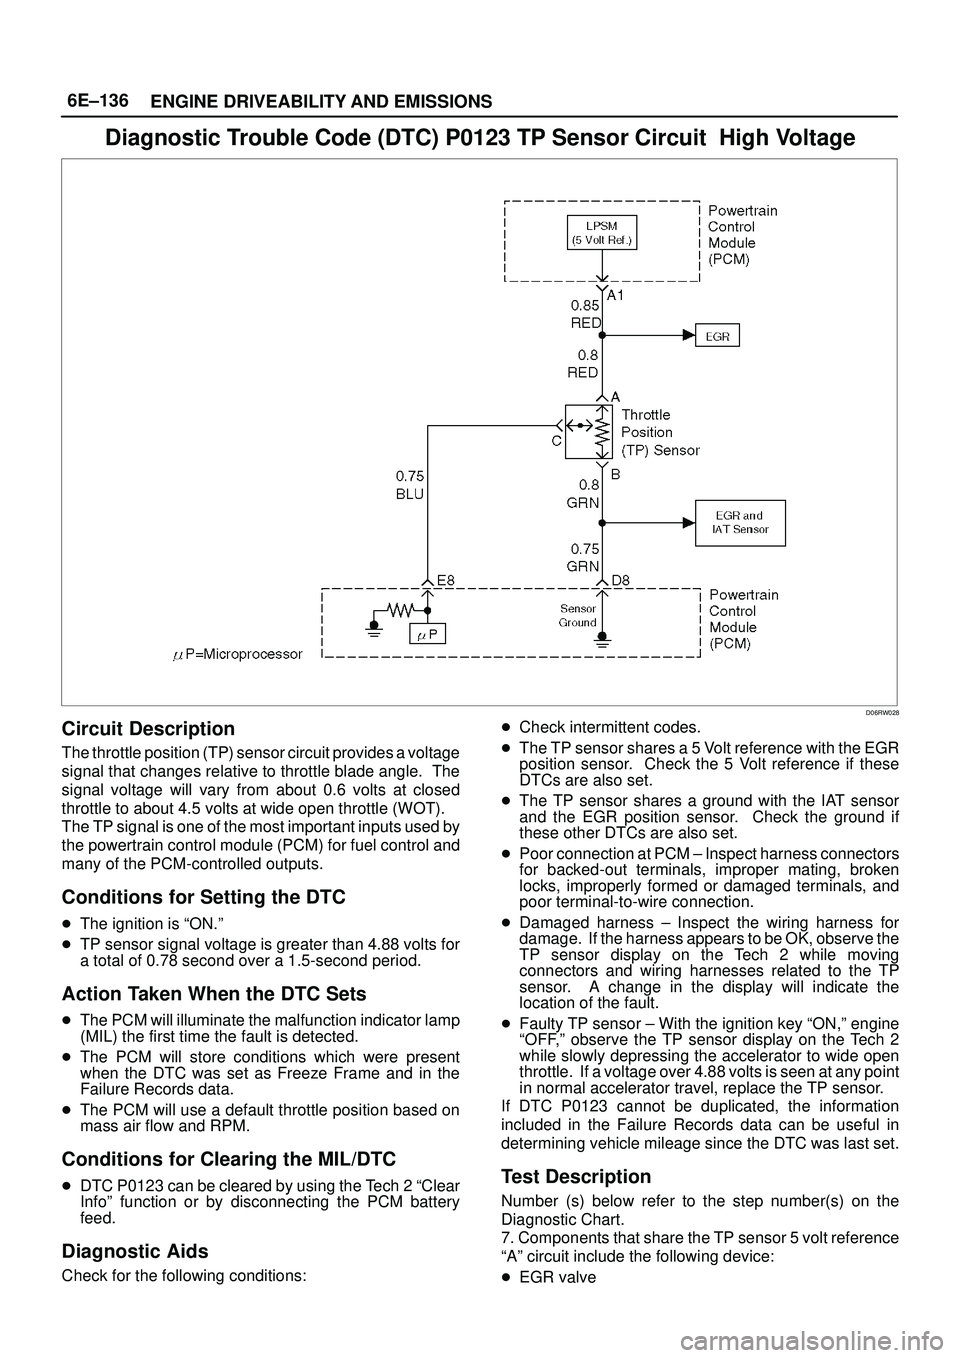 ISUZU TROOPER 1998  Service Repair Manual 6E±136
ENGINE DRIVEABILITY AND EMISSIONS
Diagnostic Trouble Code (DTC) P0123 TP Sensor Circuit  High Voltage
D06RW028
Circuit Description
The throttle position (TP) sensor circuit provides a voltage
